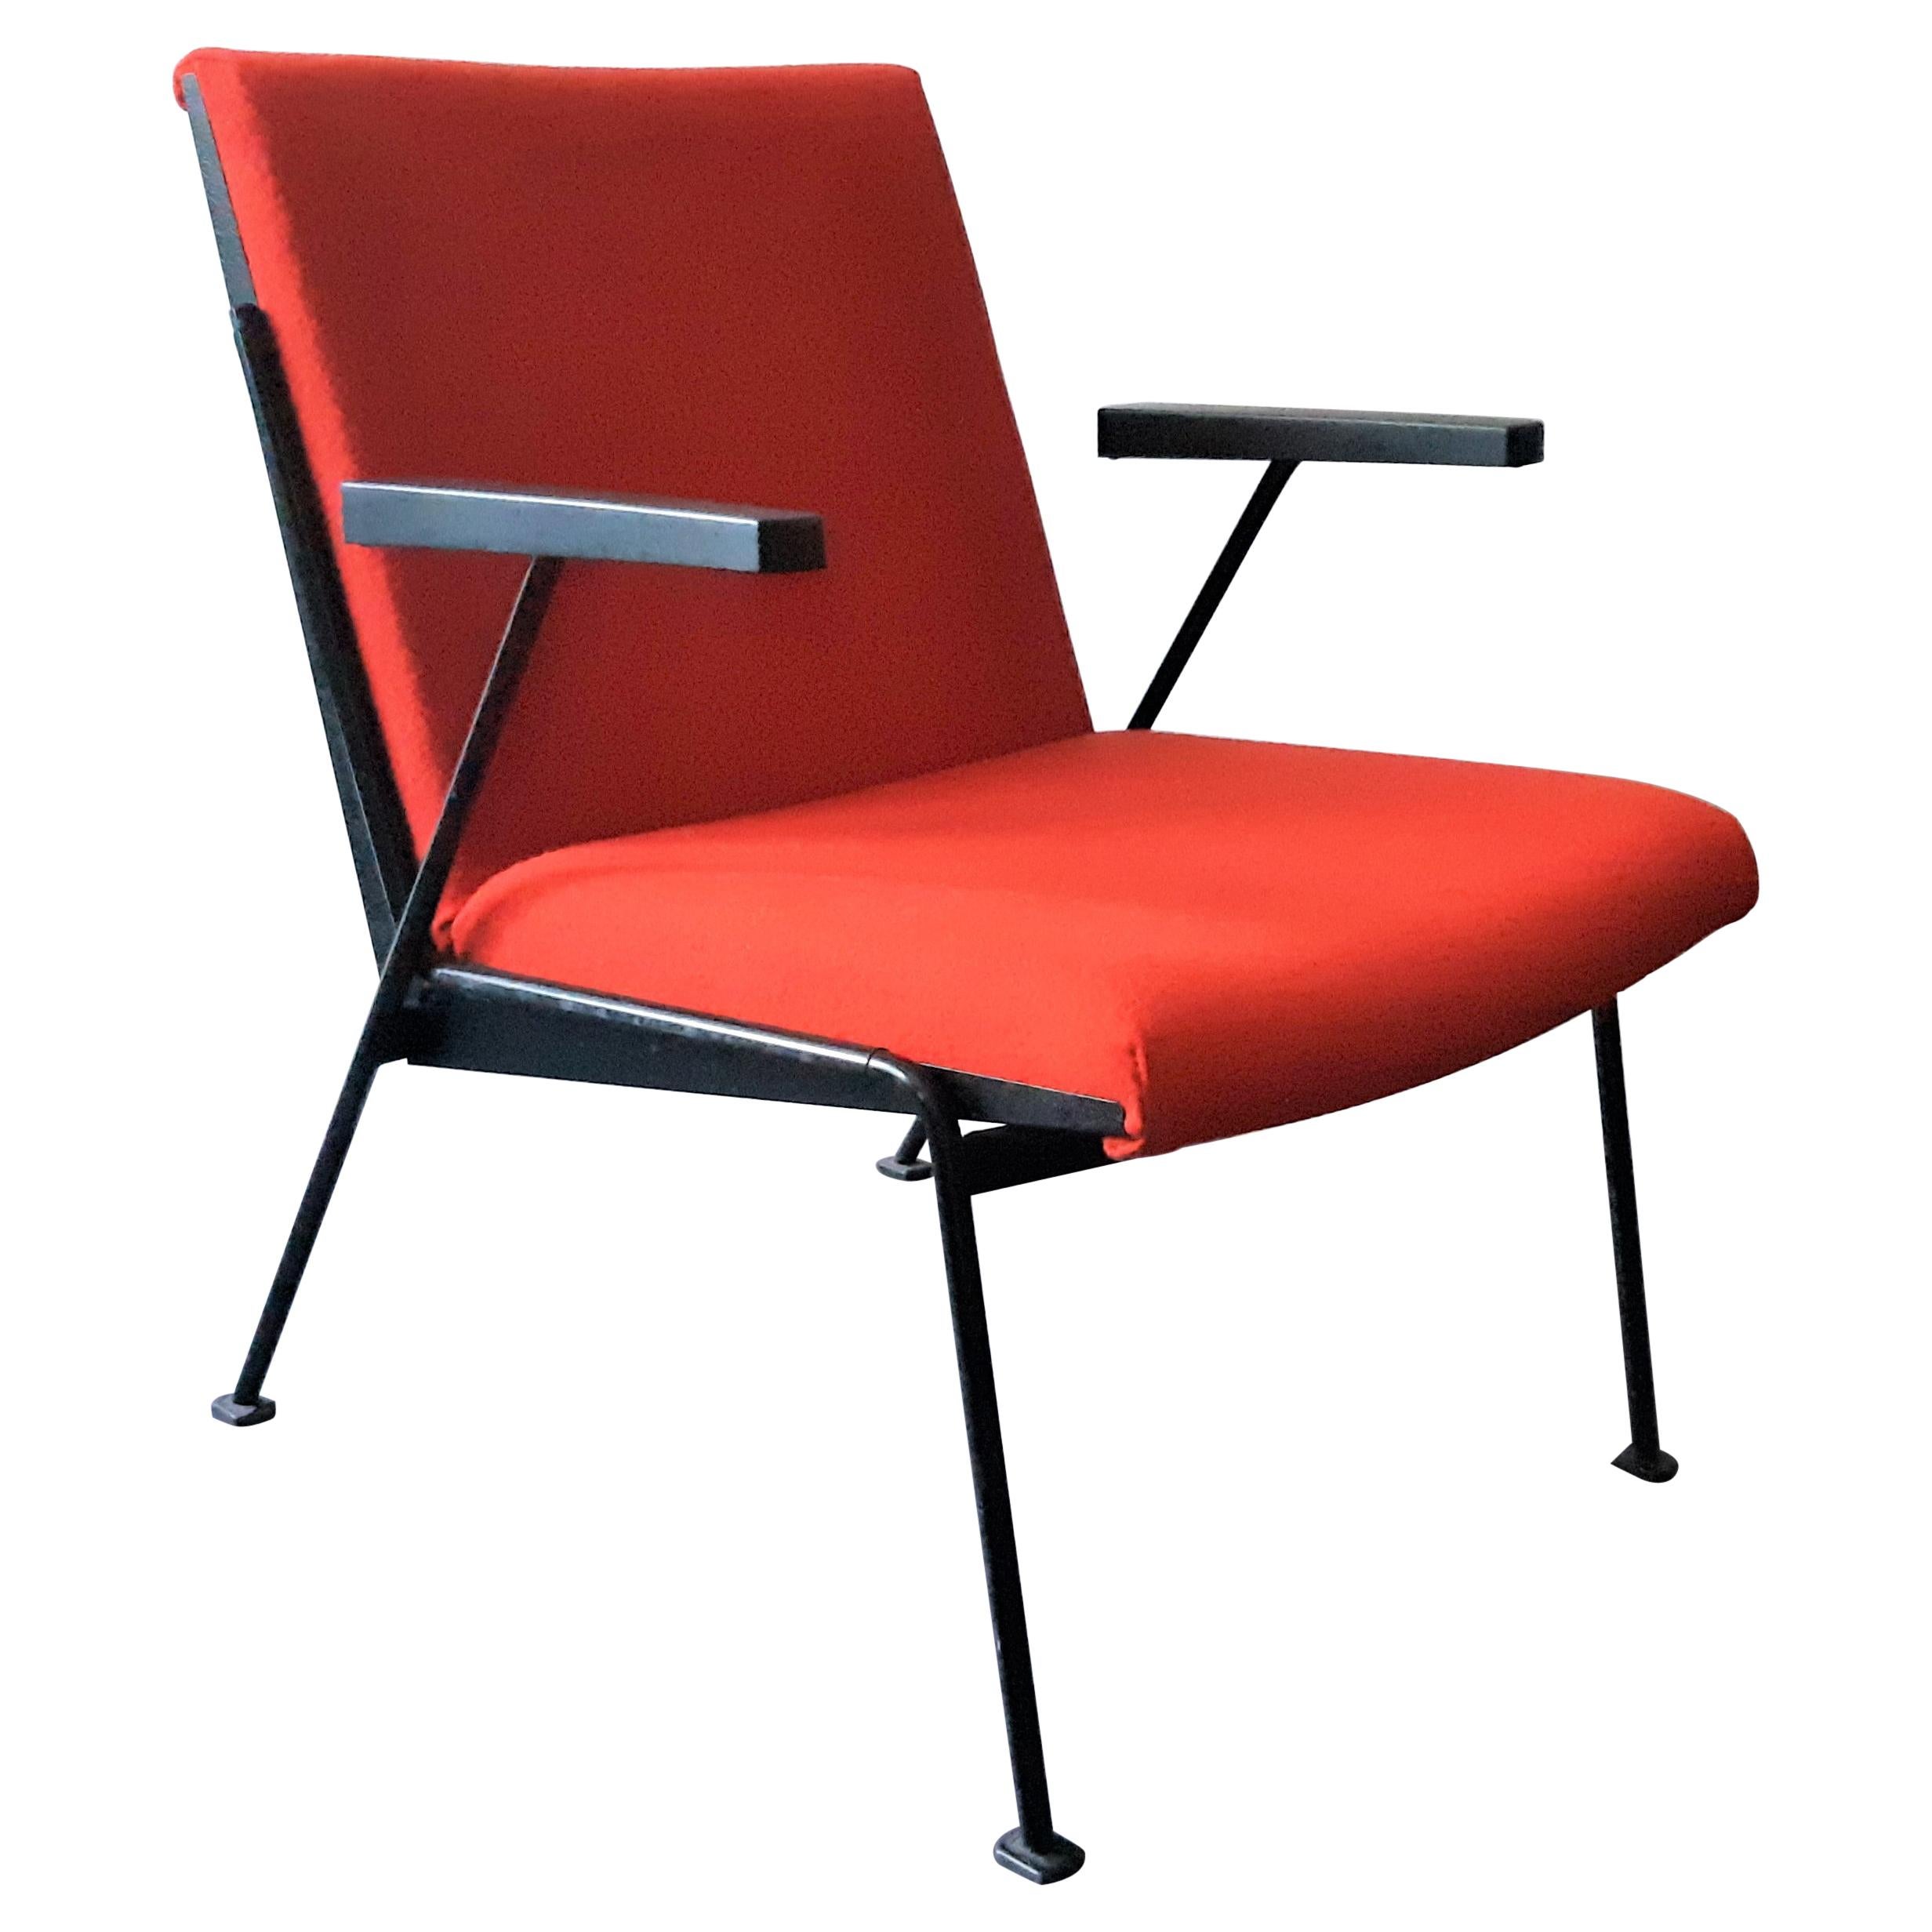 Roter Loungesessel „Oase“ mit Armlehnen von Wim Rietveld für Ahrend, 3 verfügbar im Angebot